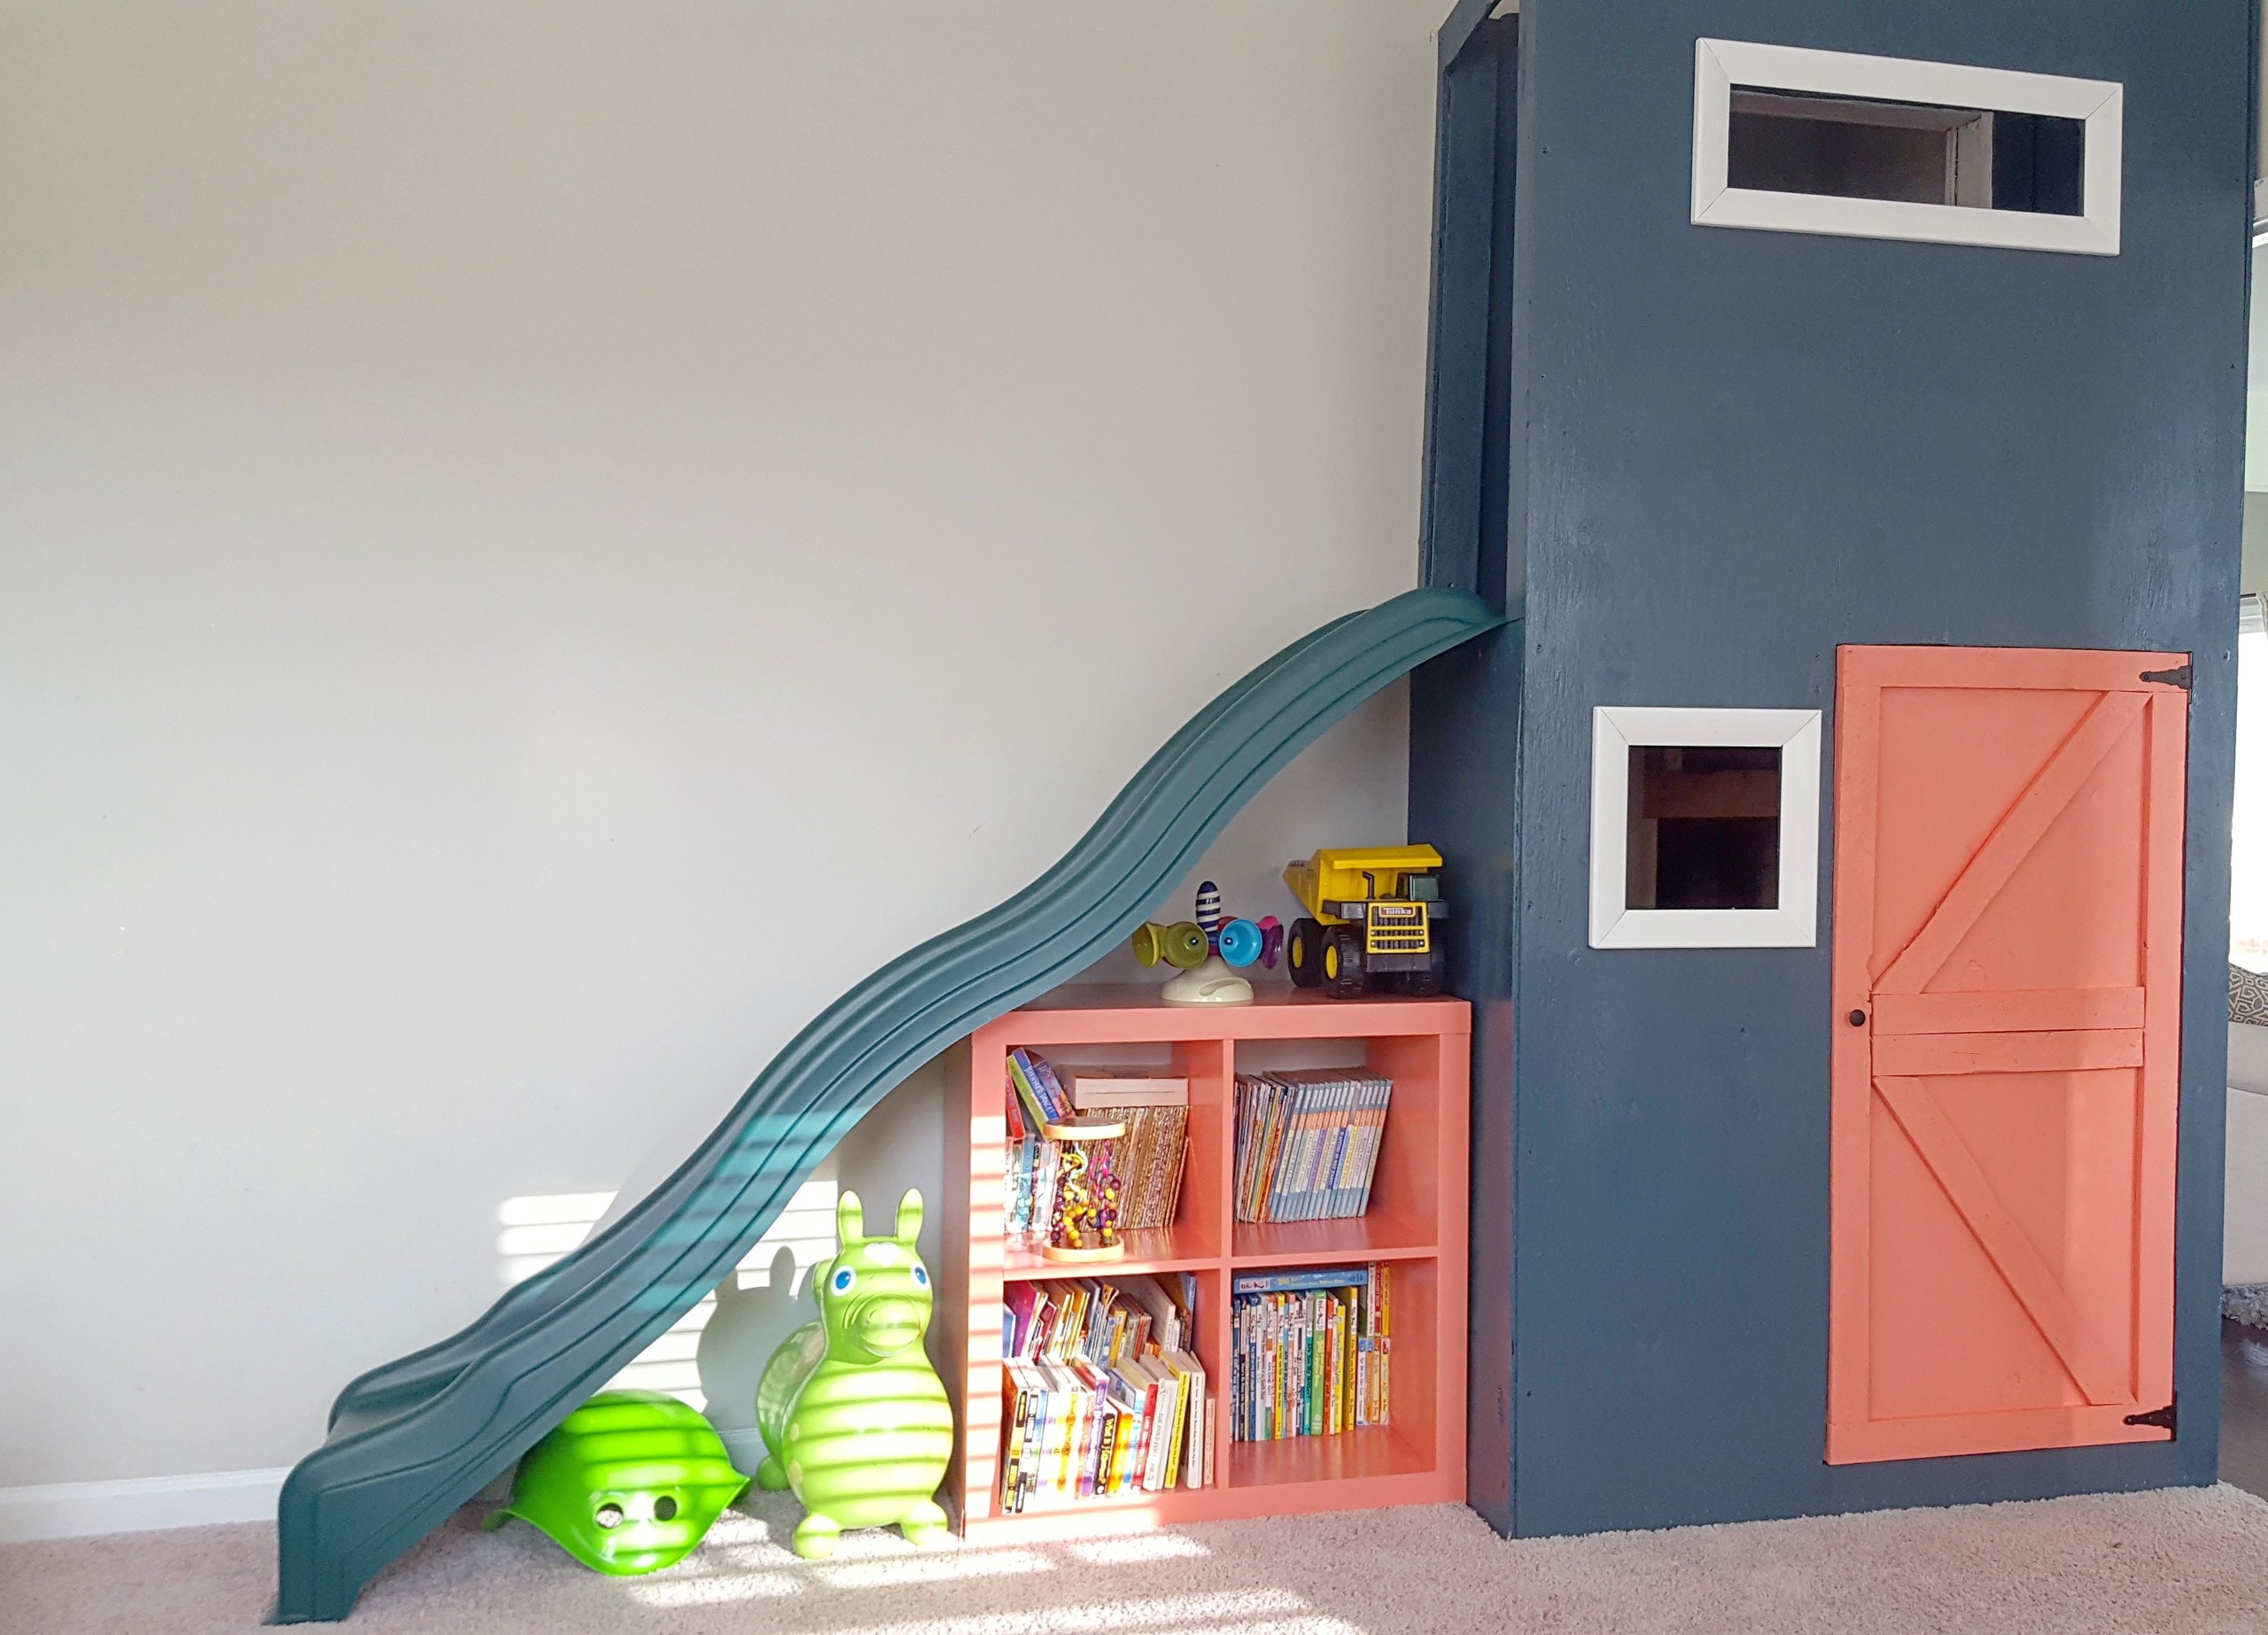 Playroom slide playhouse indoor slide under stairs